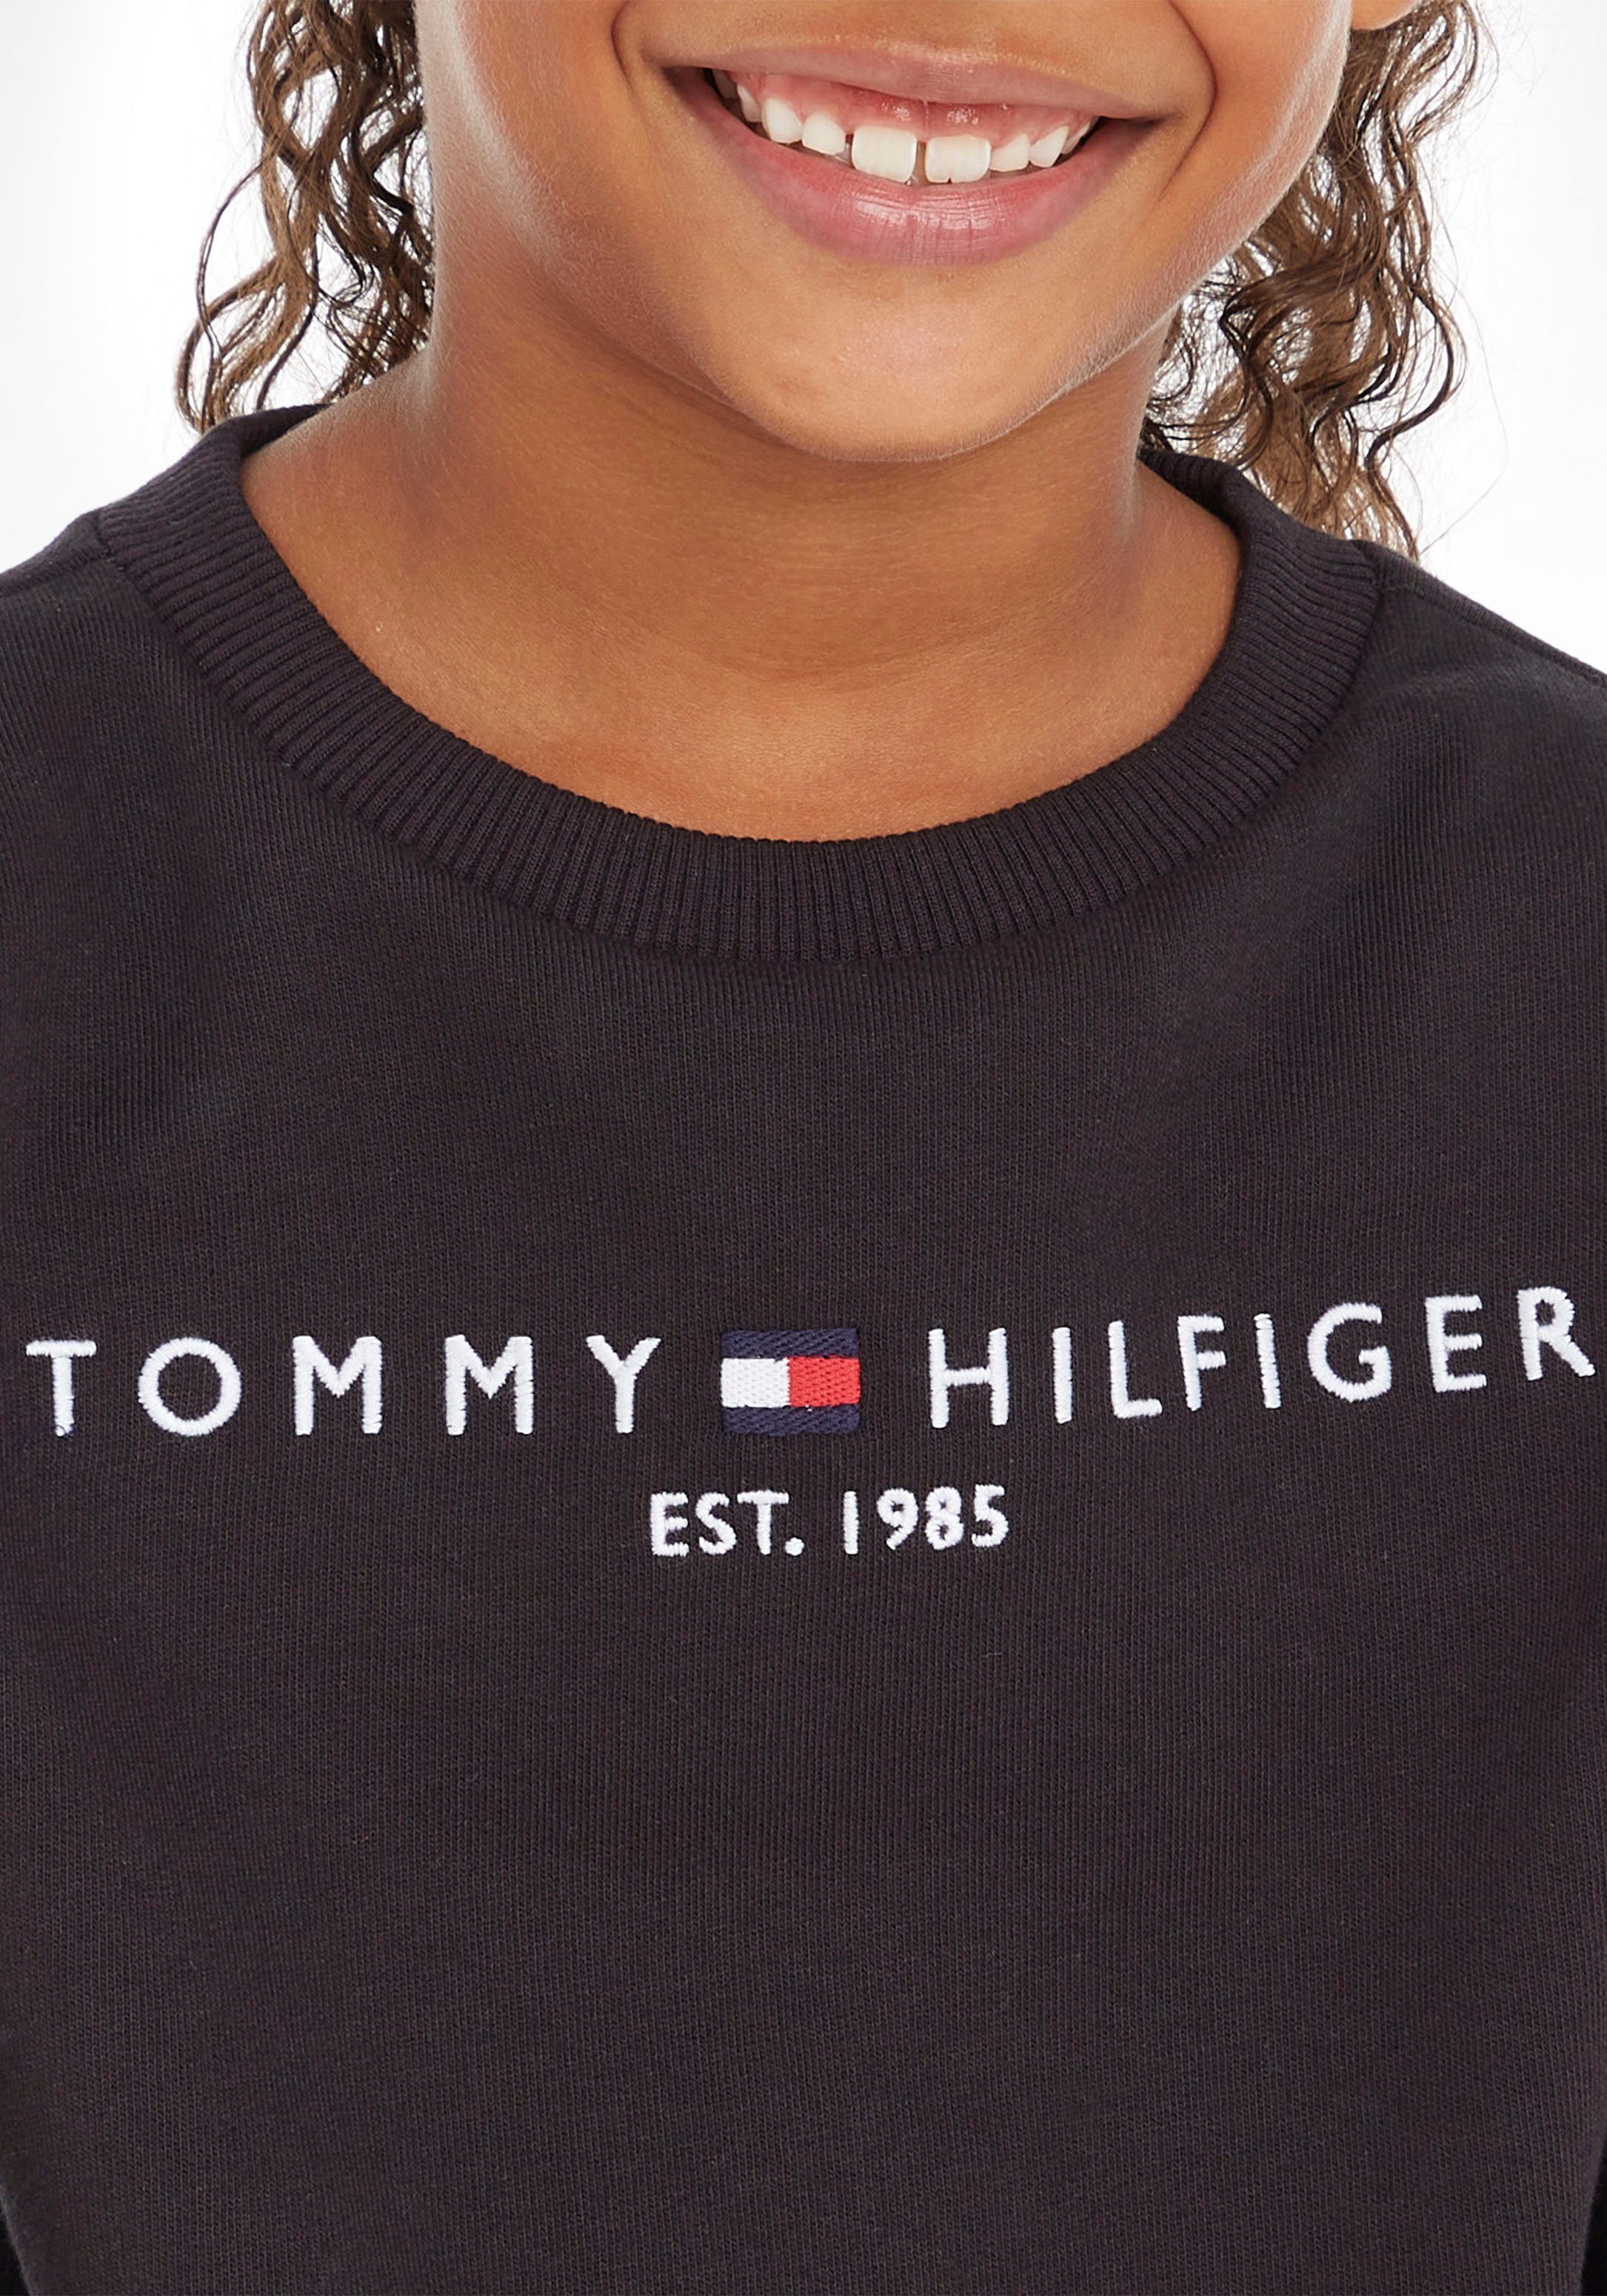 Tommy Hilfiger Sweatshirt Jungen Junior MiniMe,für und Kinder Mädchen ESSENTIAL SWEATSHIRT Kids